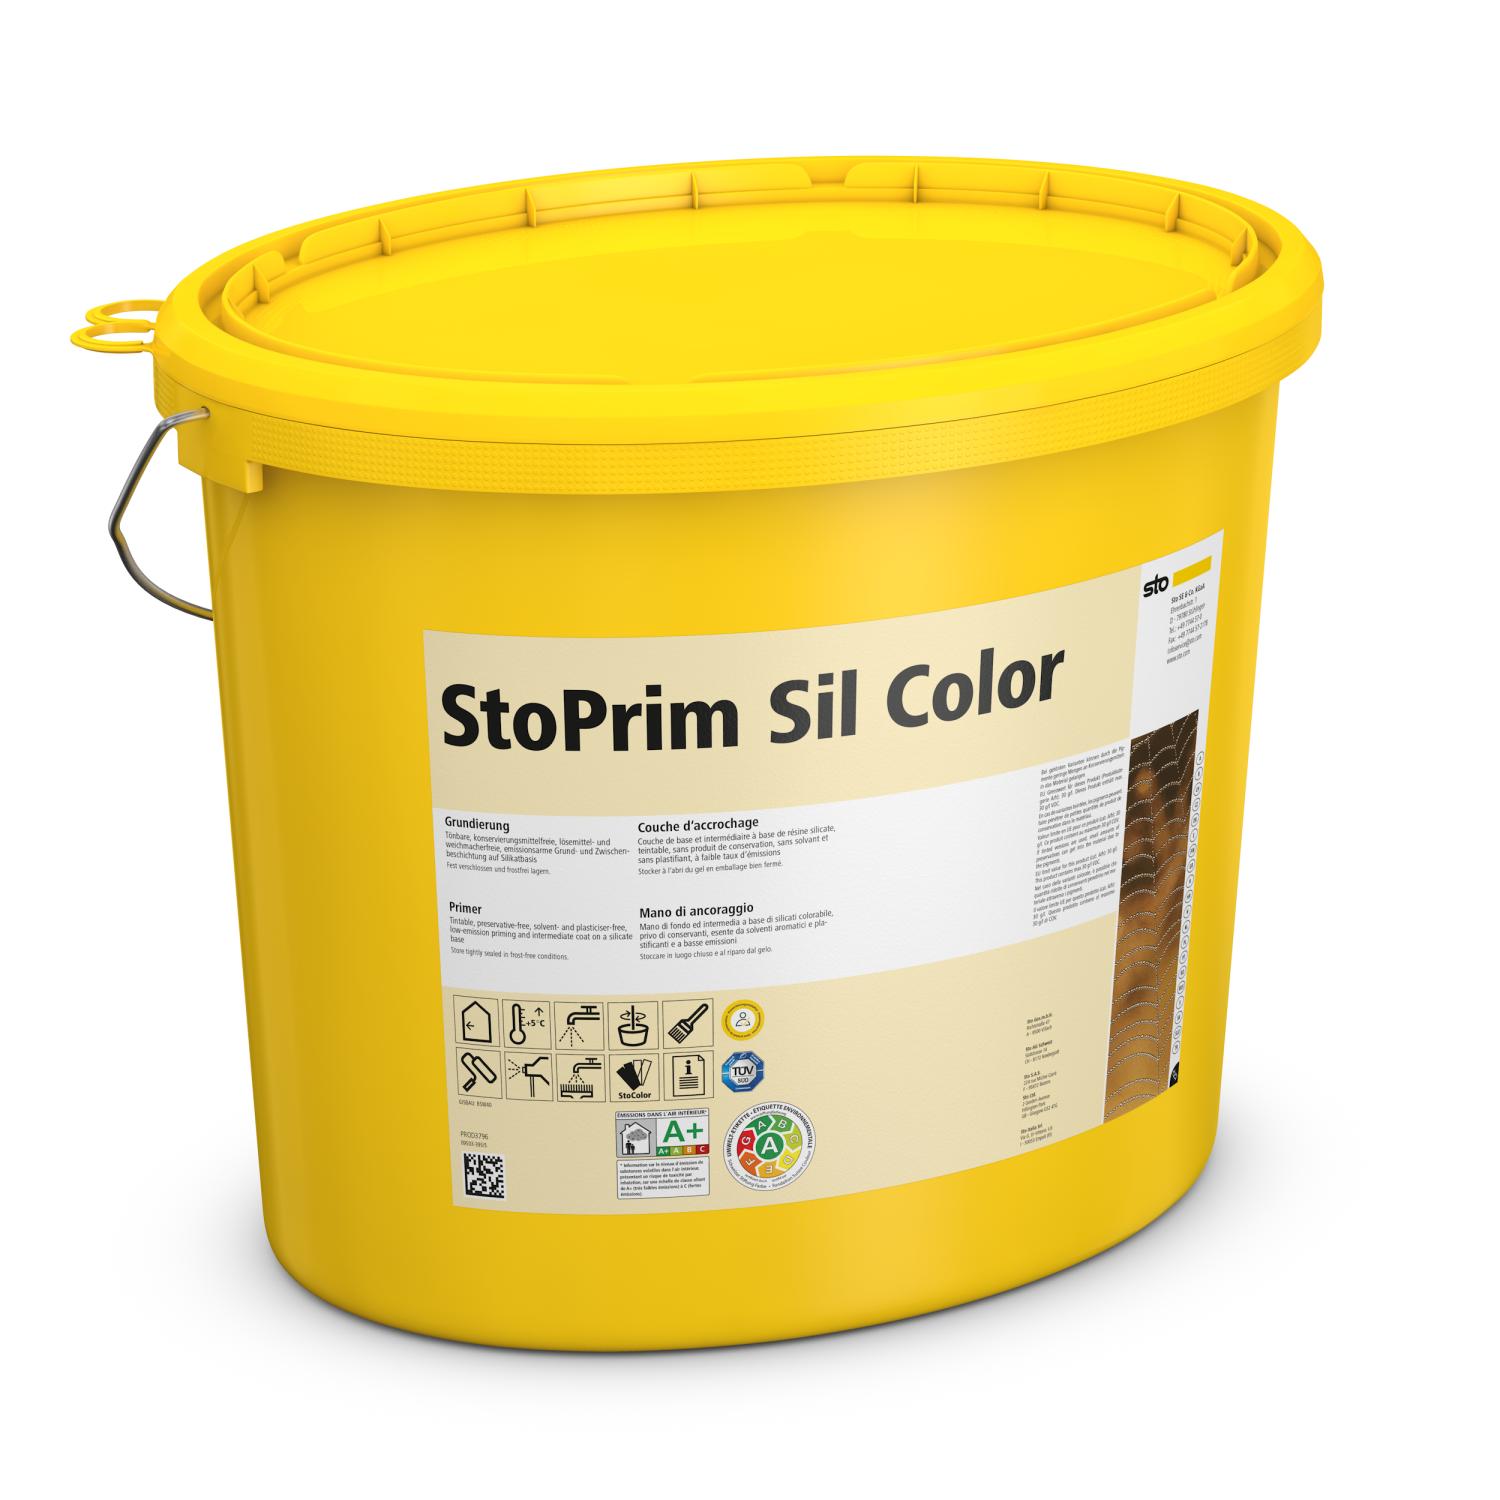 StoPrim Sil Color getönt - 5 l Eimer